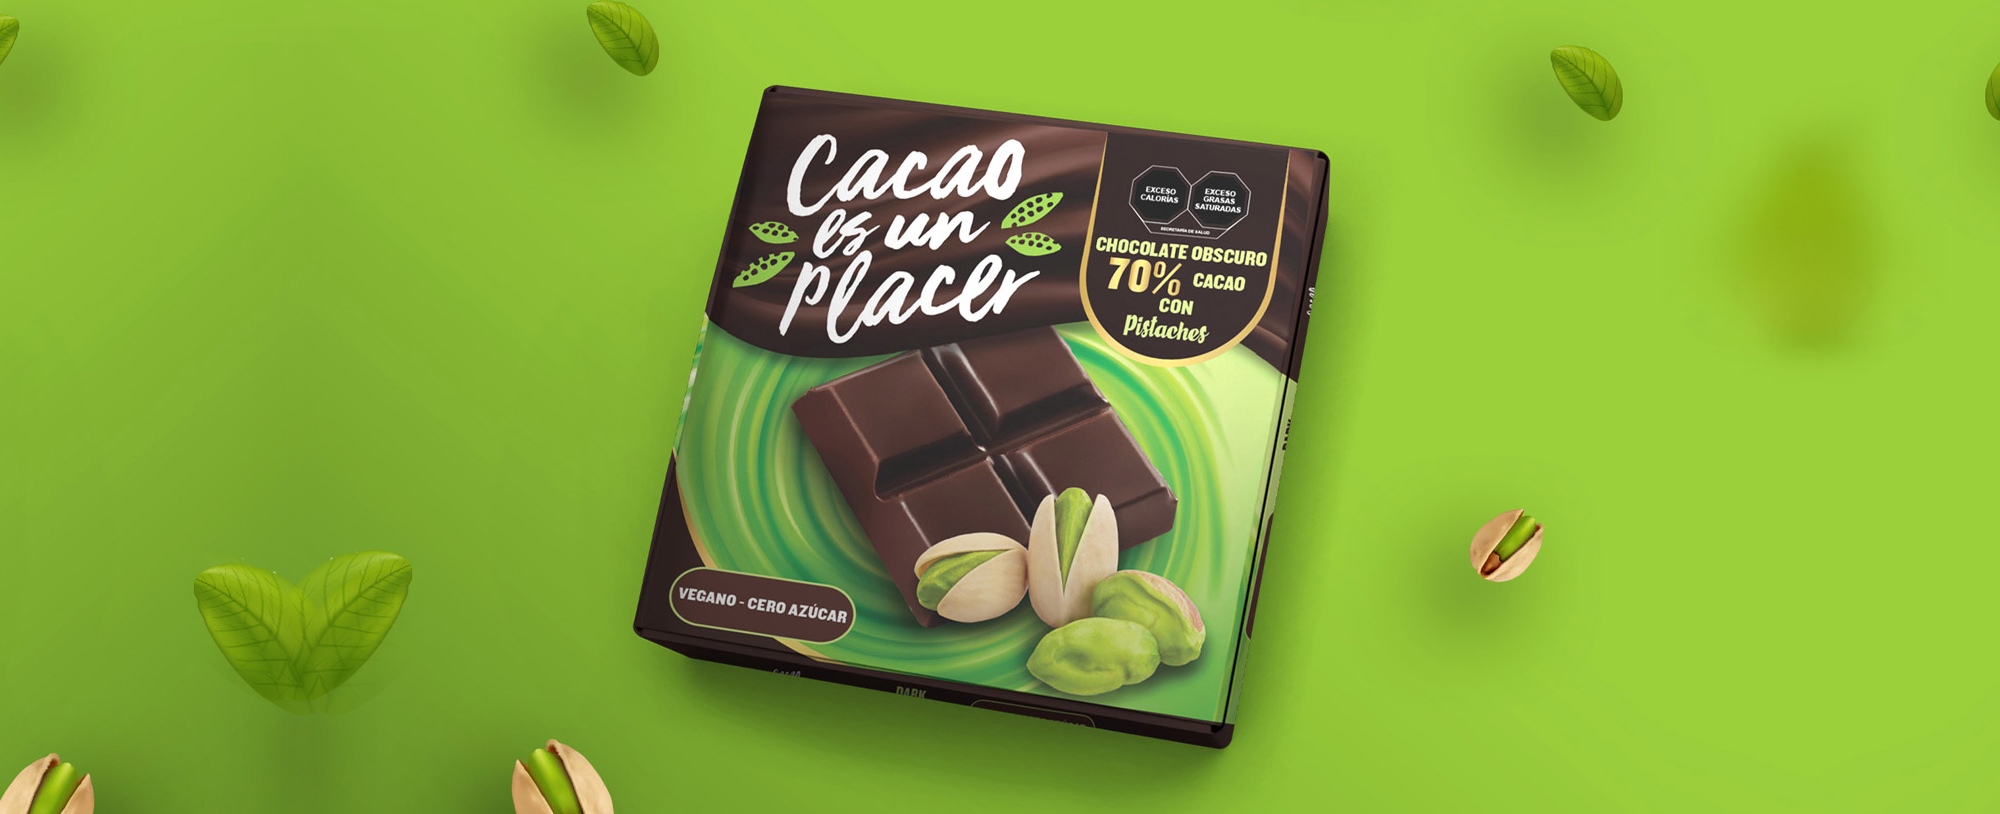 Pistachio-Chocolate-Packaging-Design